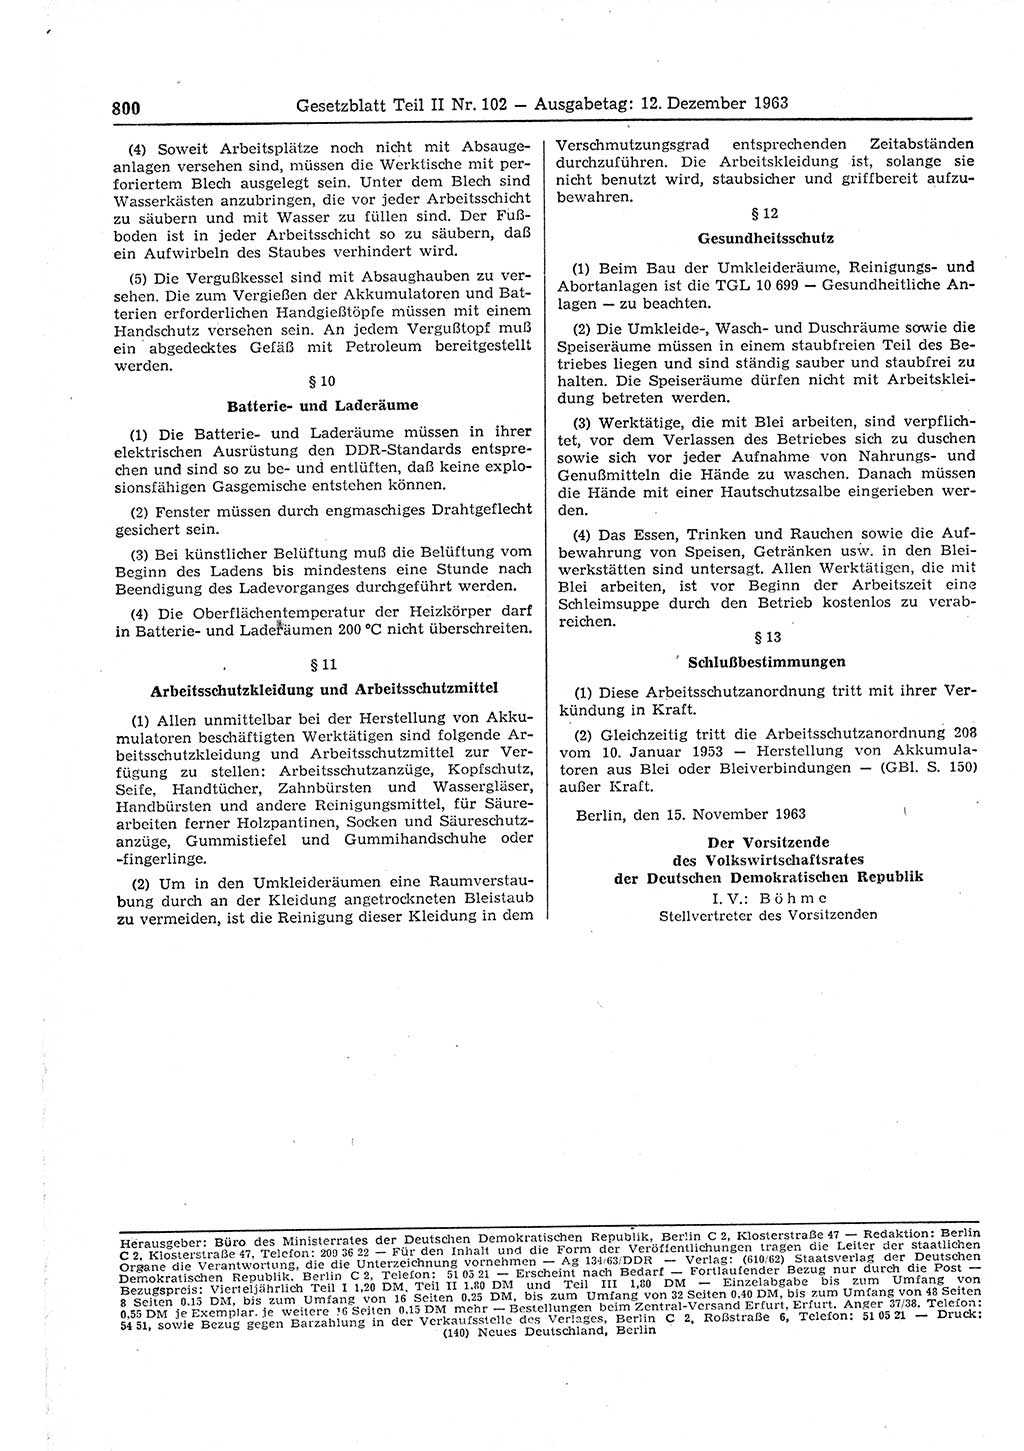 Gesetzblatt (GBl.) der Deutschen Demokratischen Republik (DDR) Teil ⅠⅠ 1963, Seite 800 (GBl. DDR ⅠⅠ 1963, S. 800)